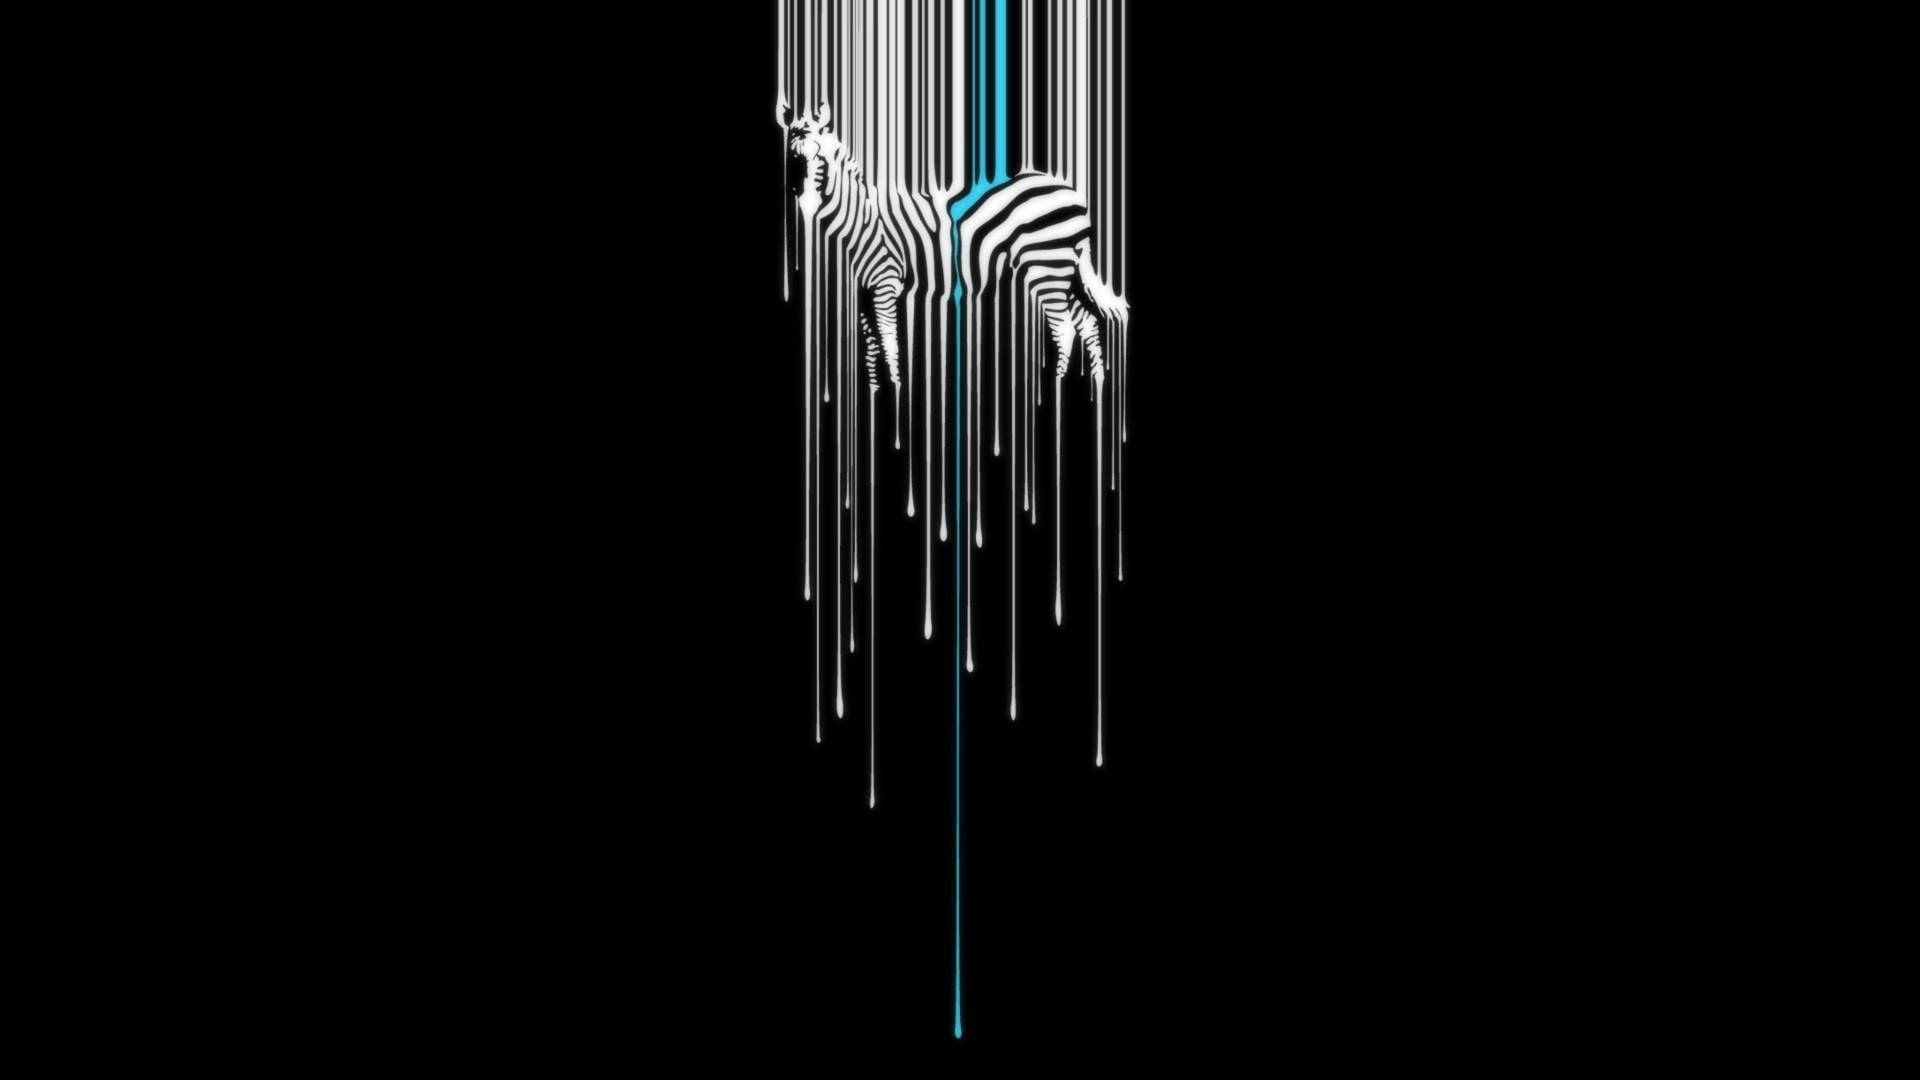 Zebra In Black Digital Artwork